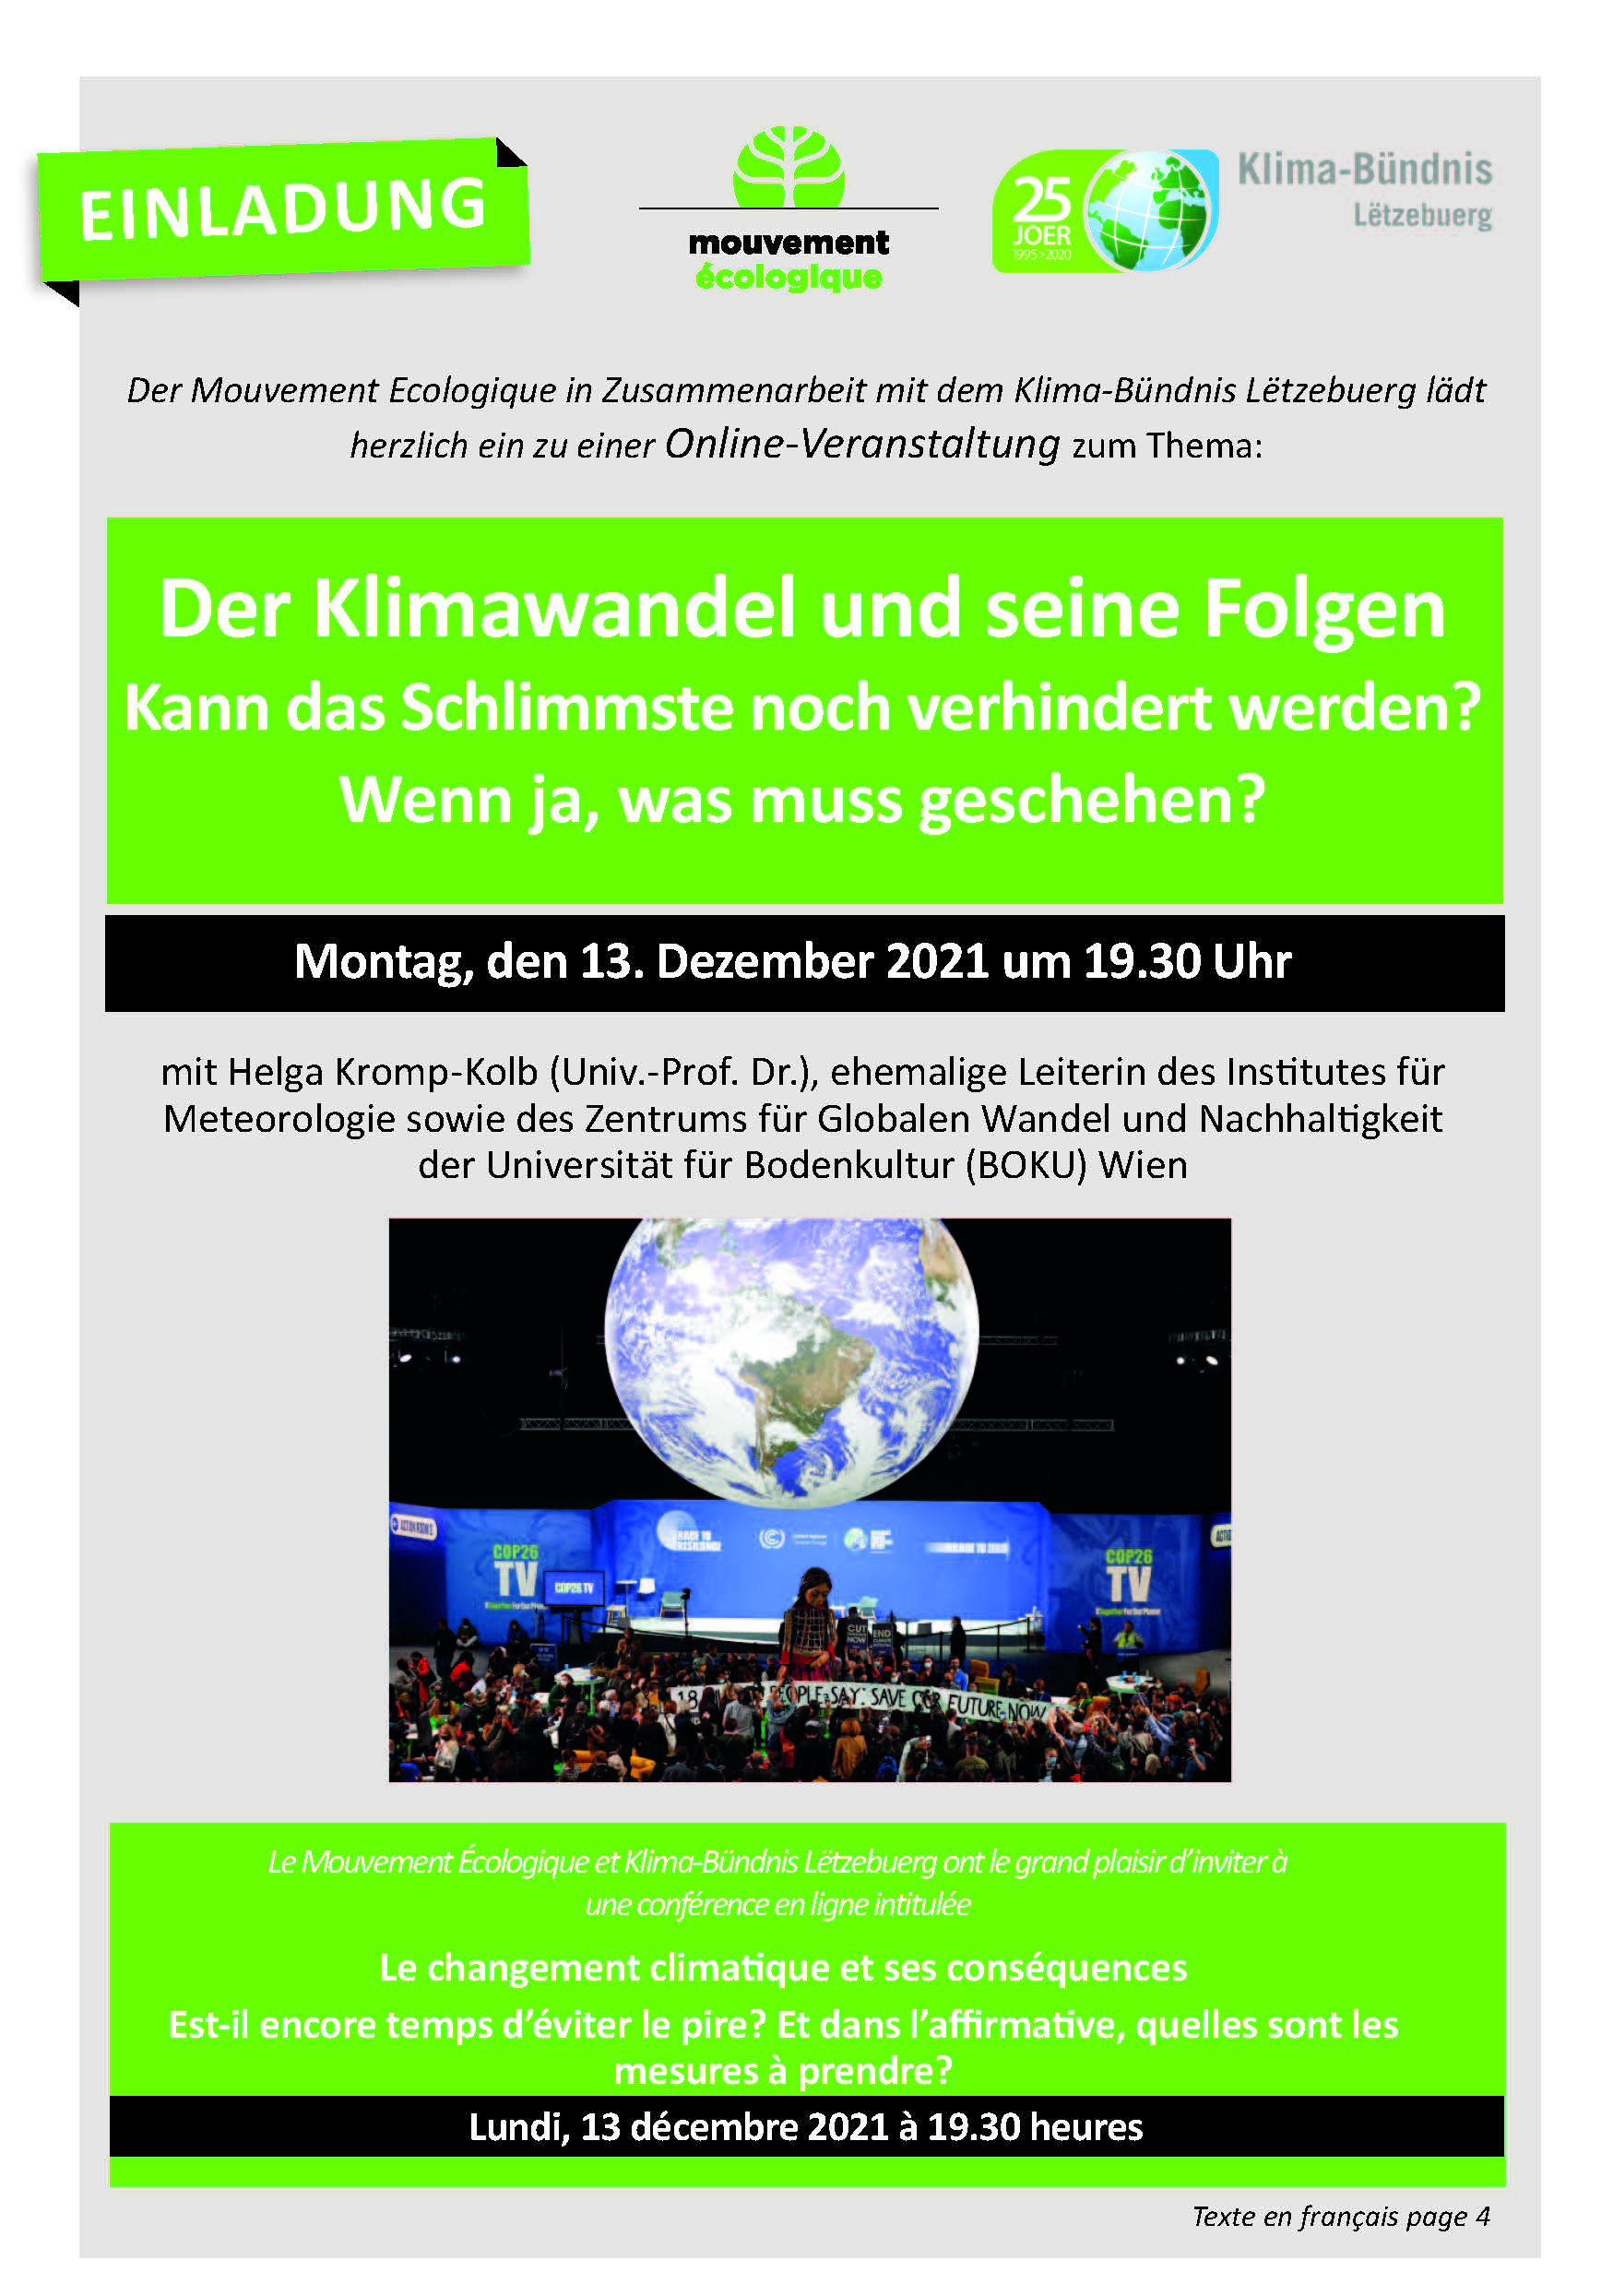 Conférence en ligne du Dr. Helga Kromp-Kolb: Le changement climatique et ses conséquences